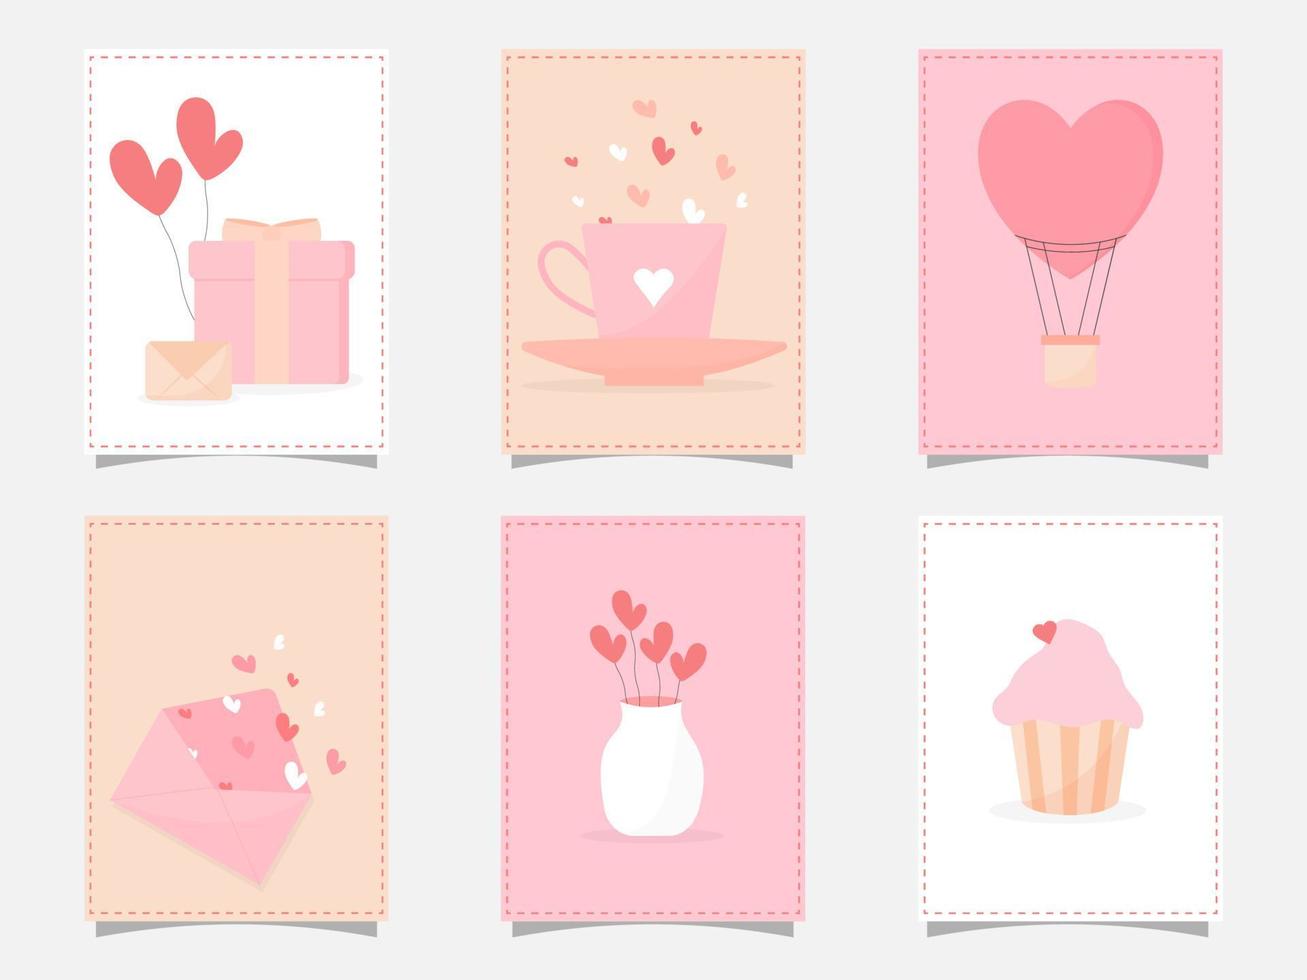 liefde kaarten of kleverig reeks met geschenk doos, envelop, hart ballonnen, koffie beker, heet lucht ballon, koekje en vaas. vector